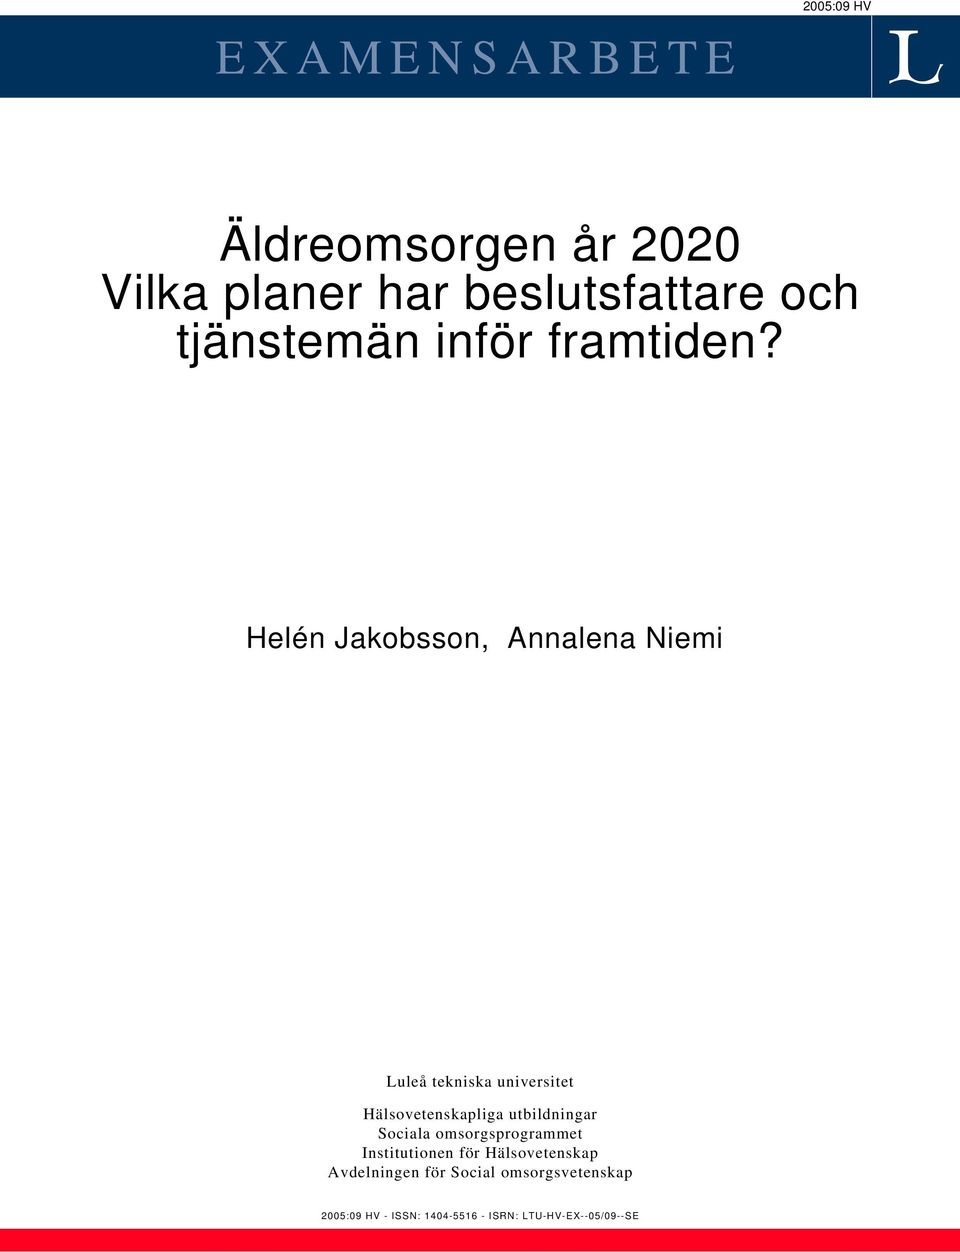 Helén Jakobsson, Annalena Niemi Luleå tekniska universitet Hälsovetenskapliga